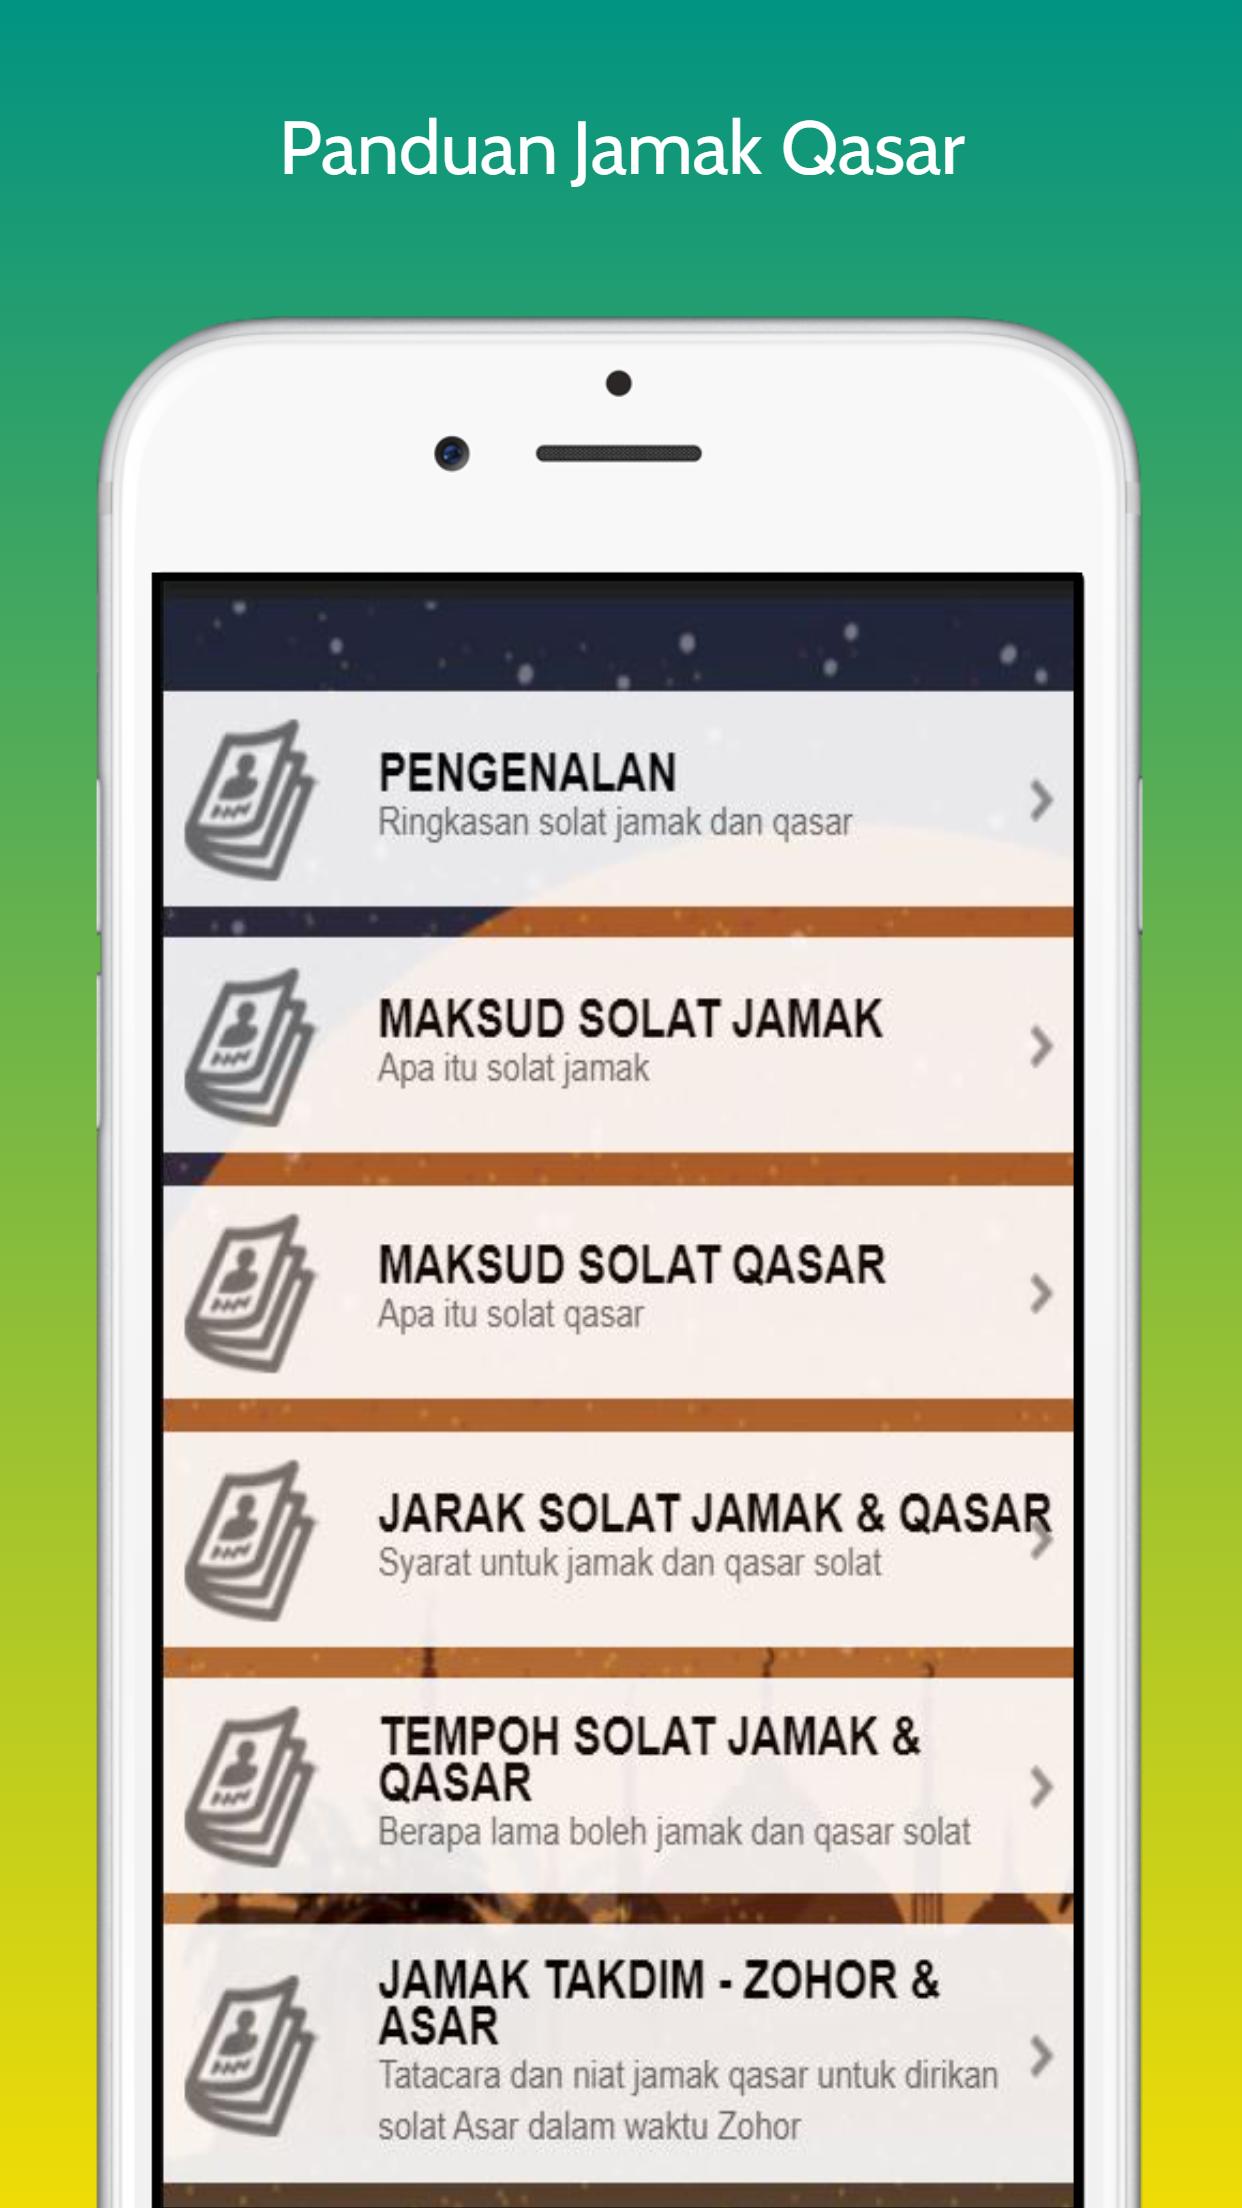 Panduan Solat Jamak Dan Qasar For Android Apk Download